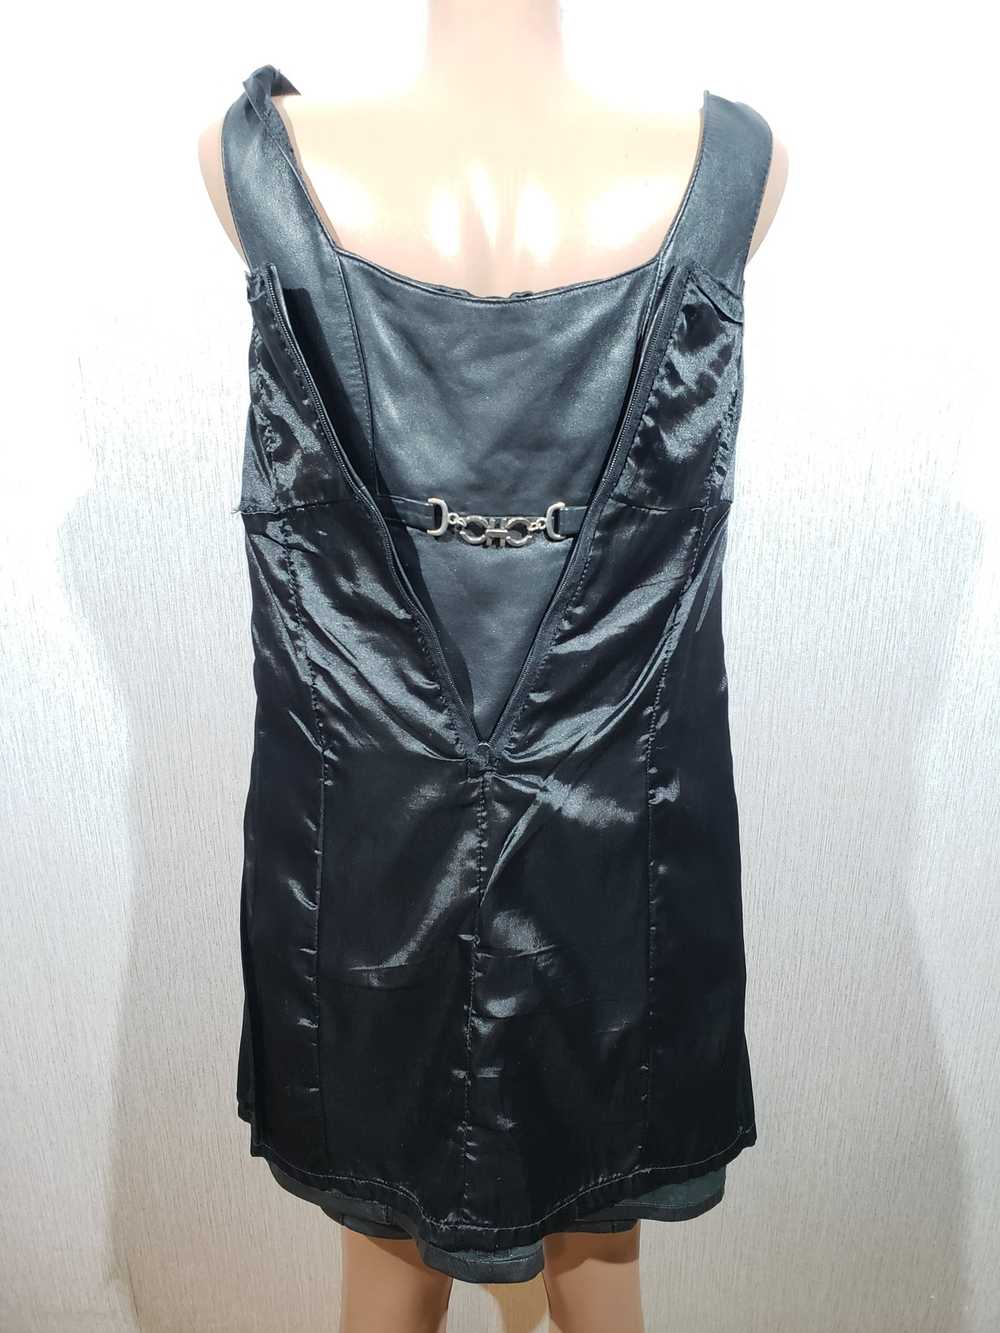 Movie × Rare Stylish black leather dress. - image 7